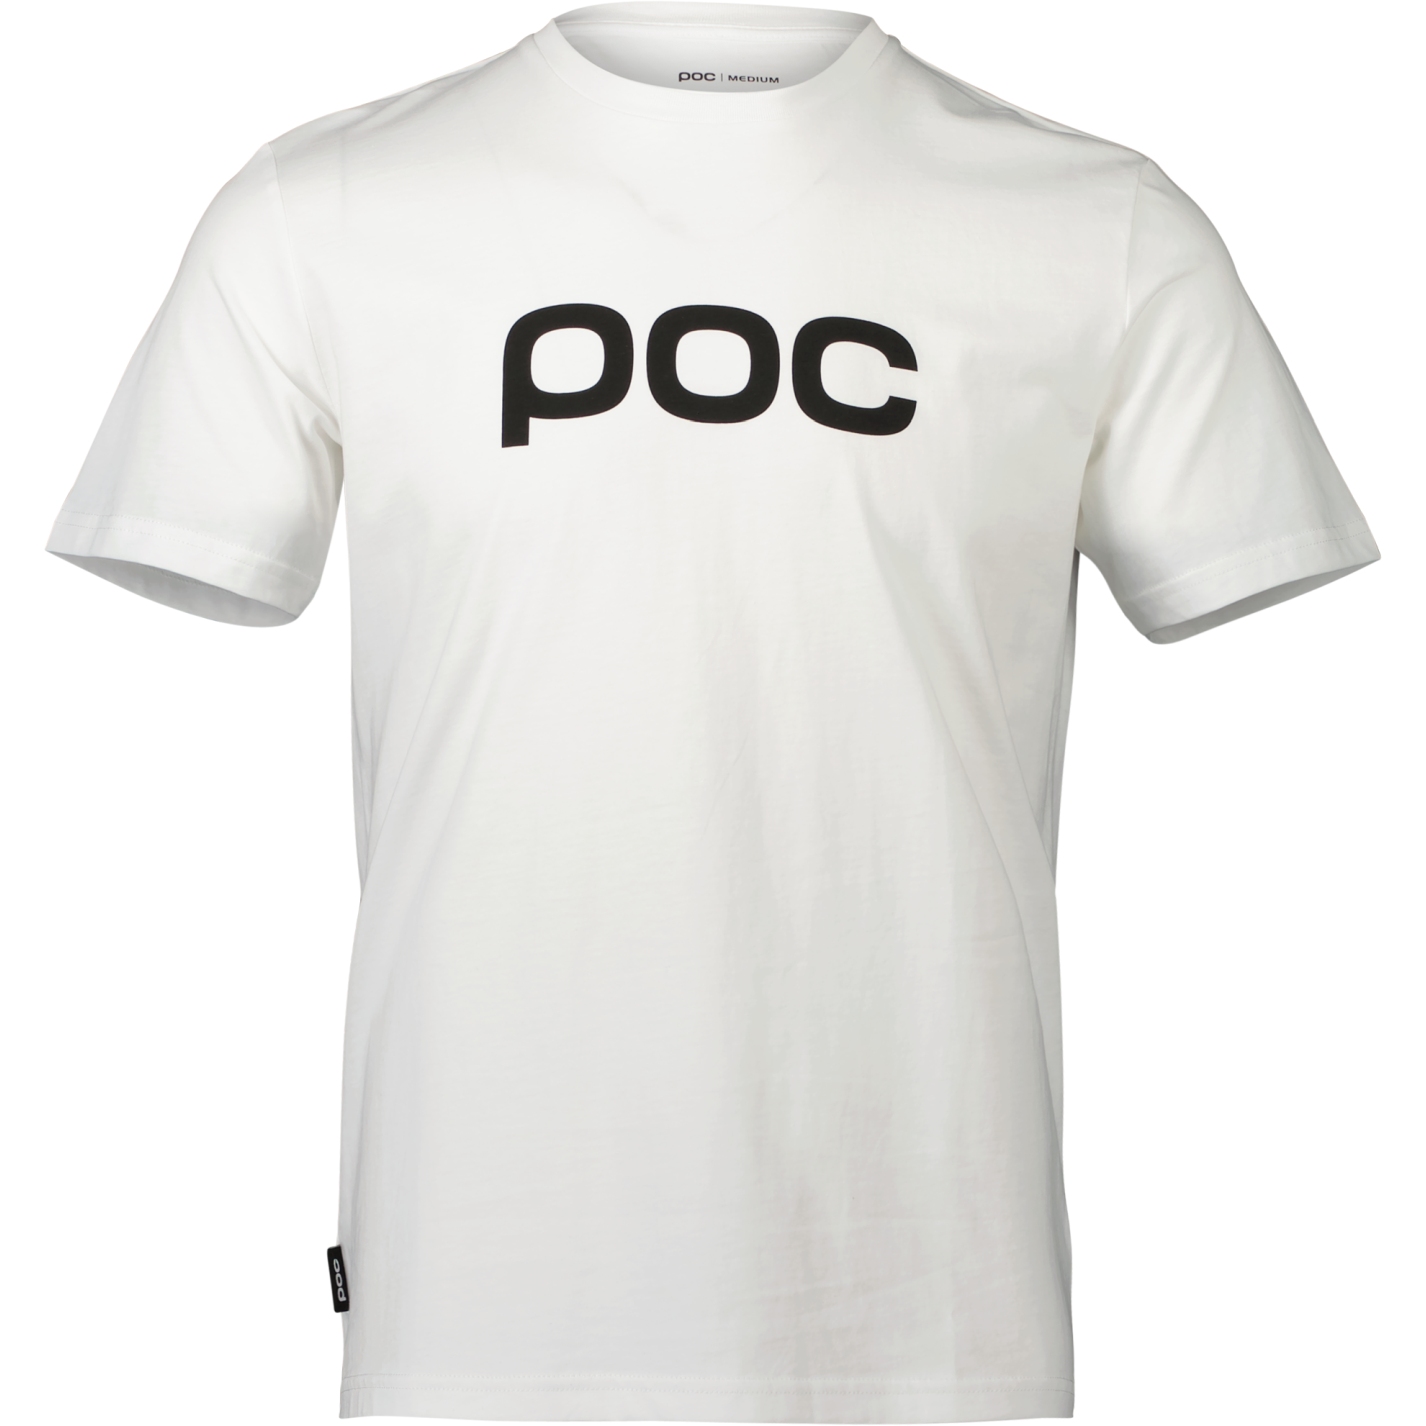 Produktbild von POC T-Shirt Herren - 1001 Hydrogen White